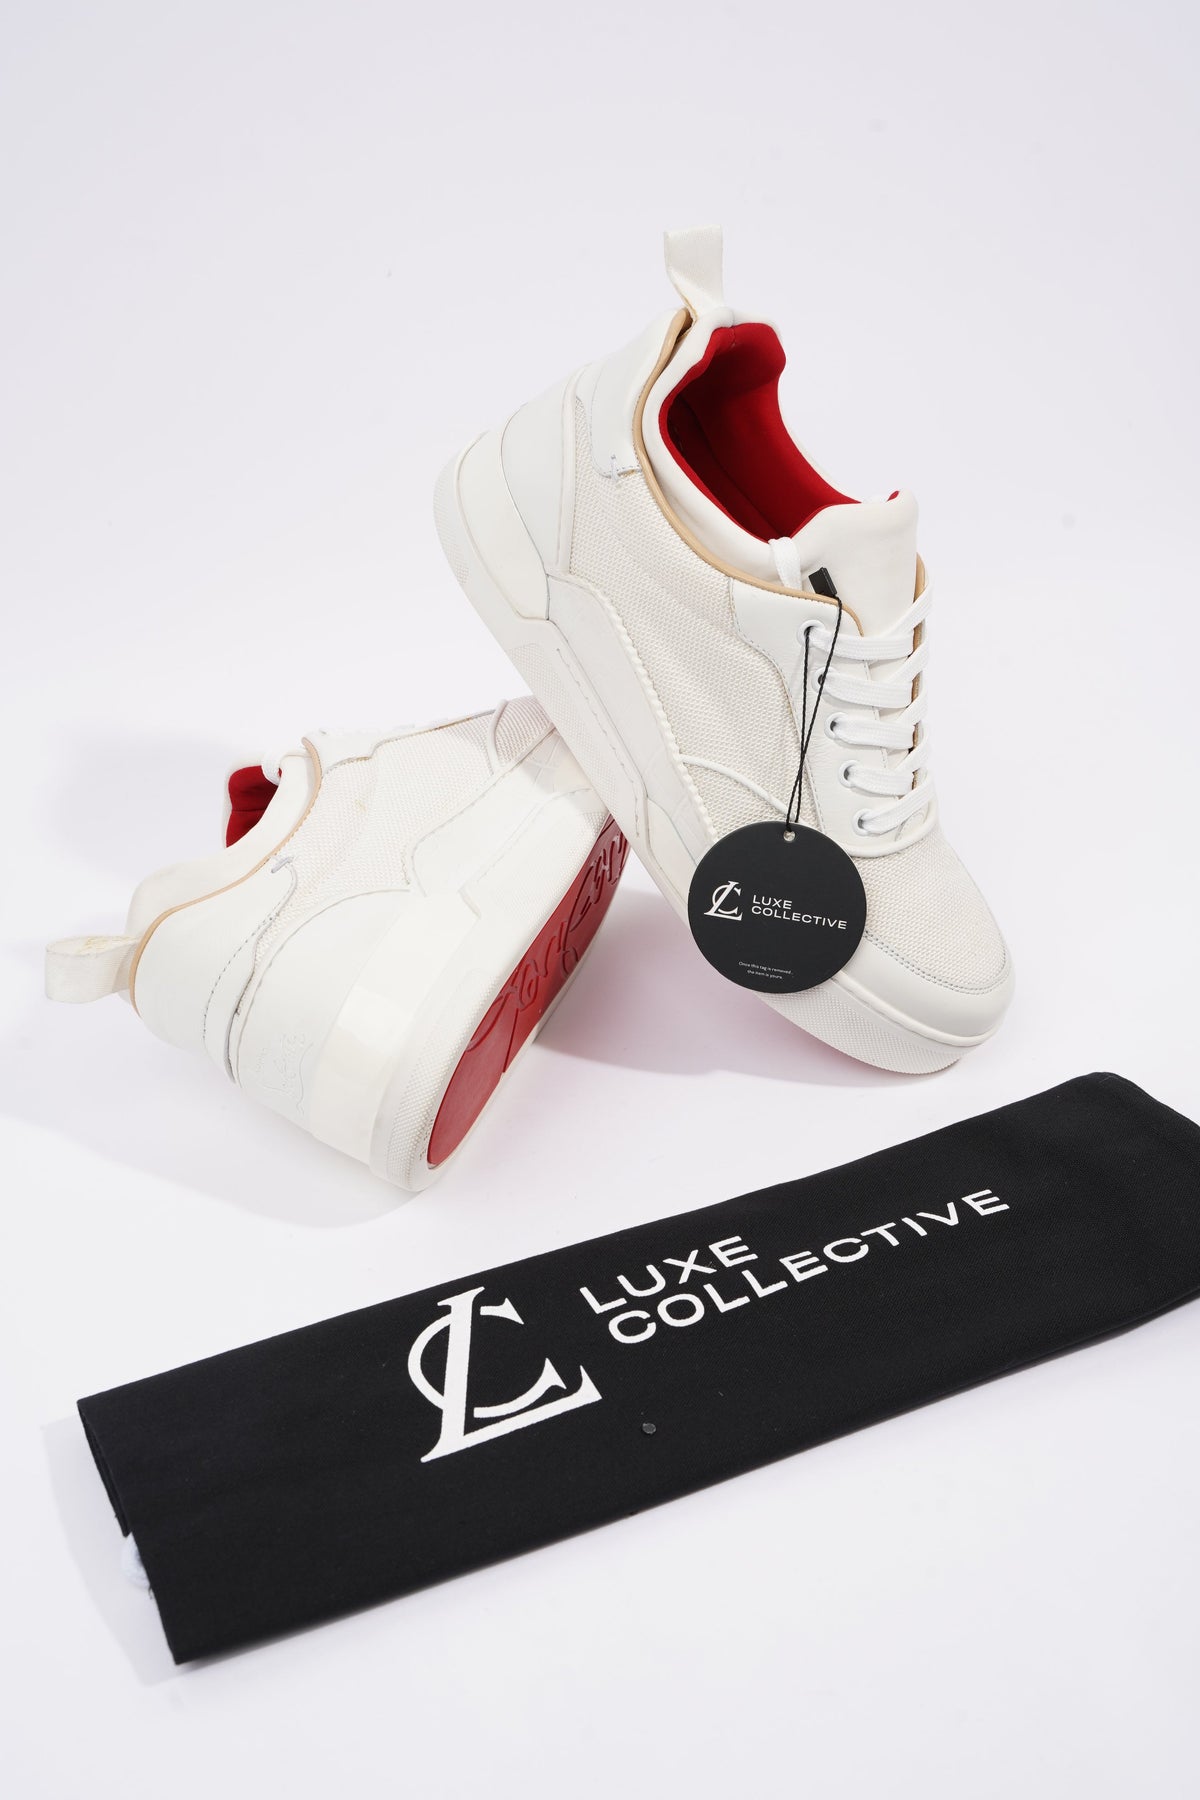 Christian Louboutin Aurelien flat sneakers for Men - White in Kuwait